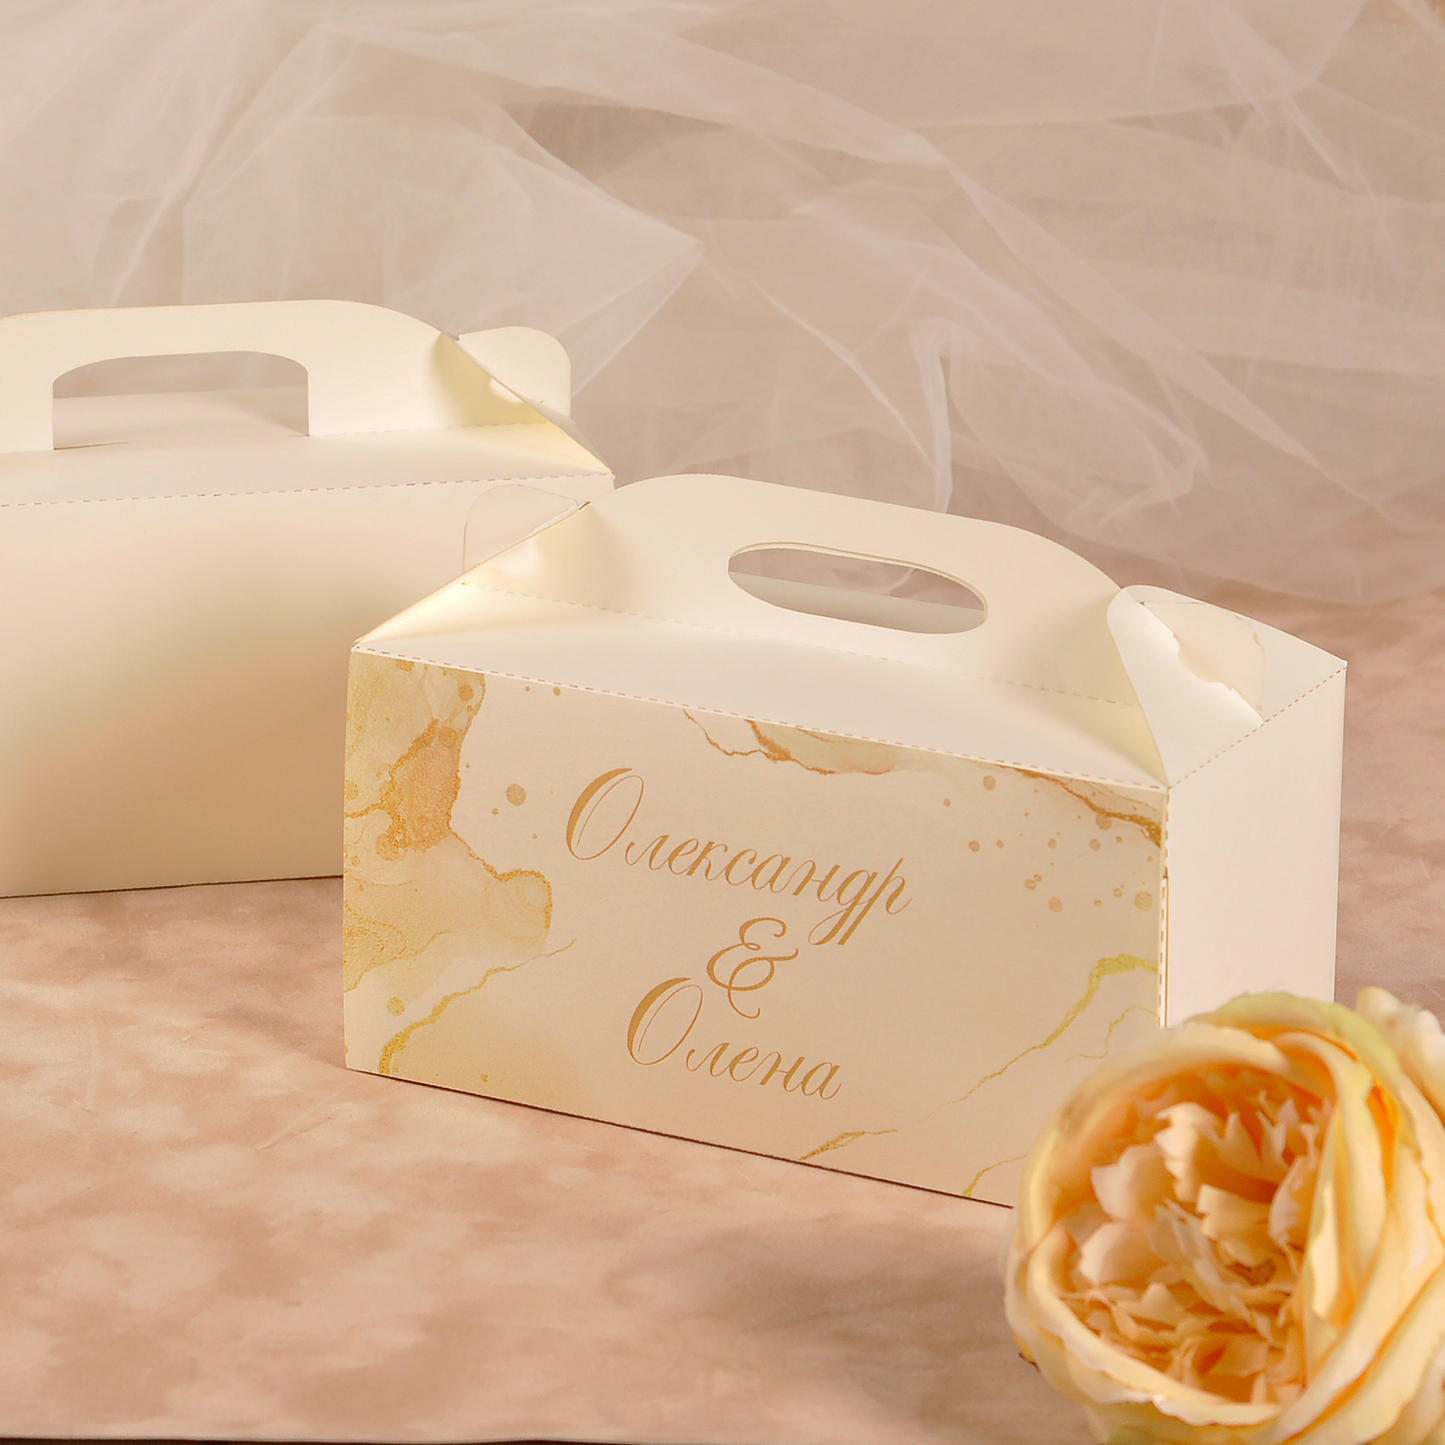 коробочки для тортів на весілля, коробочки для торта на свадьбу, коробочки для каравая, коробочки для каравая на свадьбу, коробочки для свадебного каравая, коробка для солодкого, коробки для солодкого на весілля, коробка на весілля для пляцків, Коробка для сладкого, Коробки для солодкого на весілля, Коробки для гостей та на весільне солодке, Коробочки для солодкого на весілля, Коробочки для солодкого,